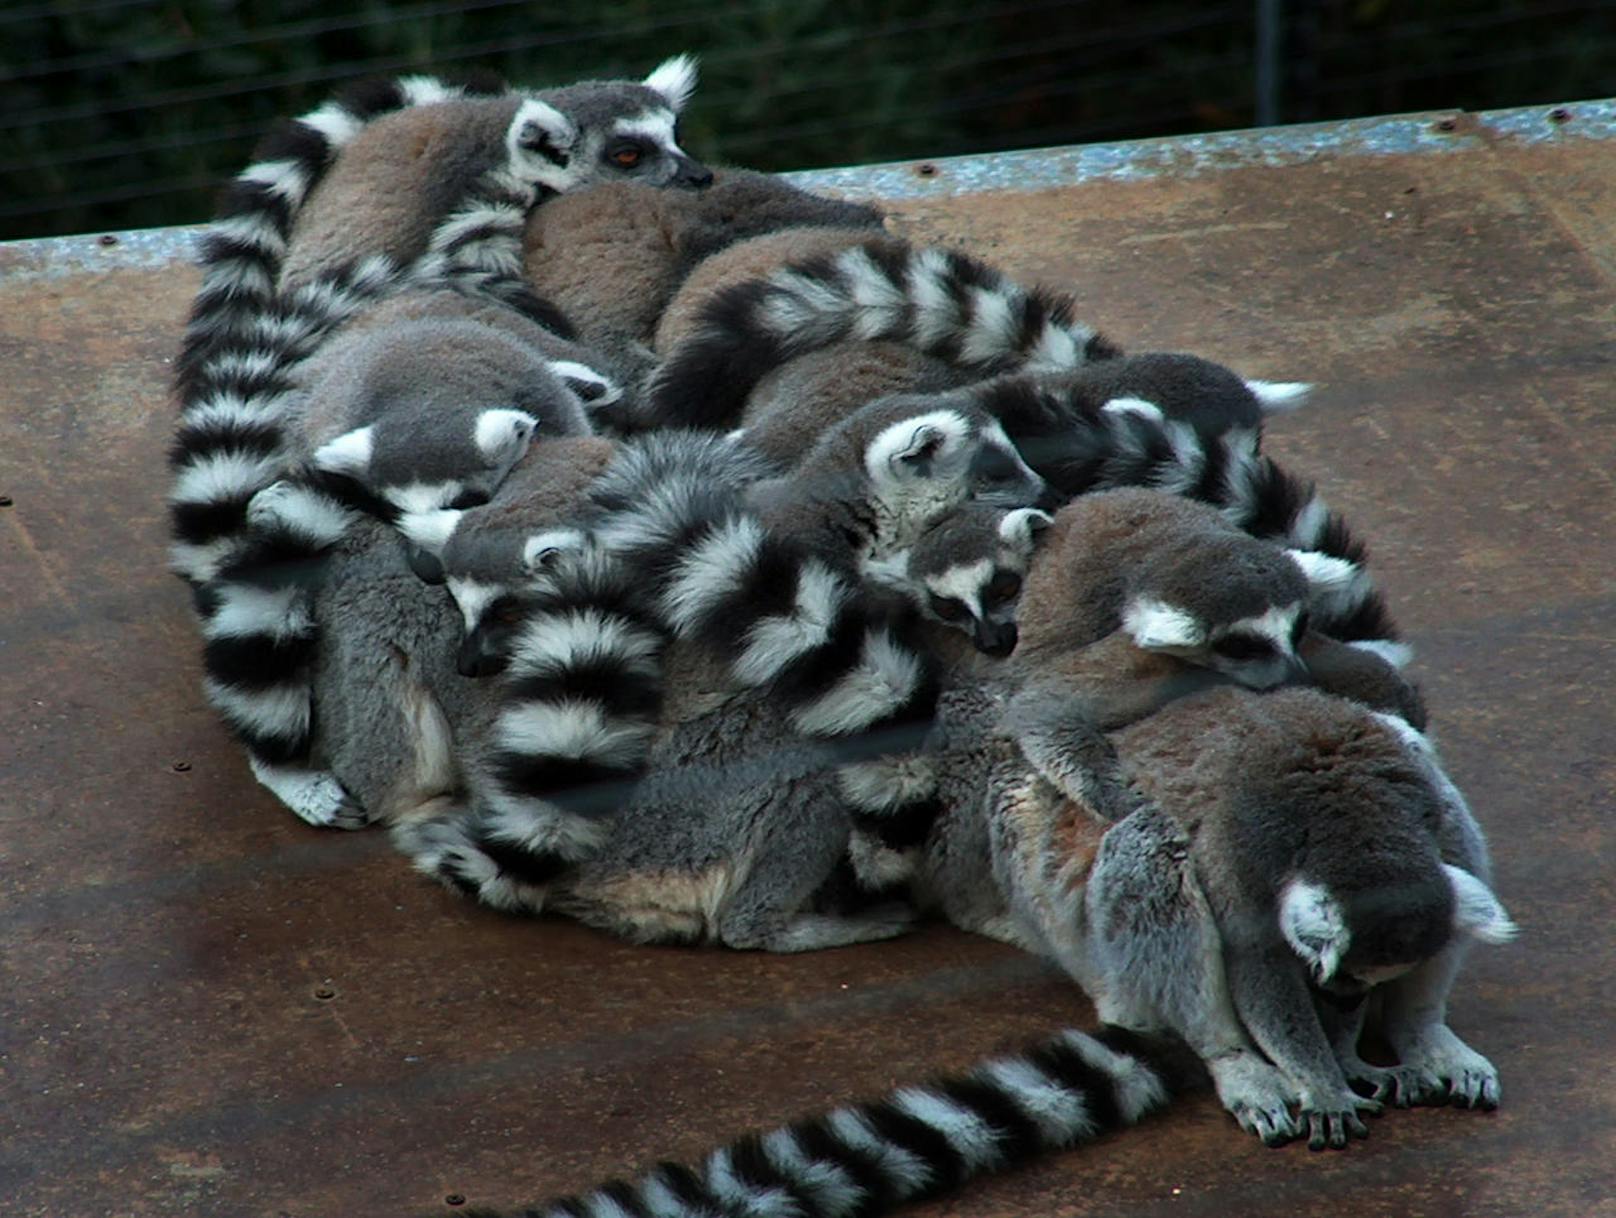 <b>Schlafende Lemuren!</b> Es ist nicht so einfach, sich über den Winter warm zu halten - aber mit einer großen Familie geht das. Um warm zu bleiben, drängte sich der eng verbundene Haufen auf einem Tisch zusammen und schlummerte langsam ein.